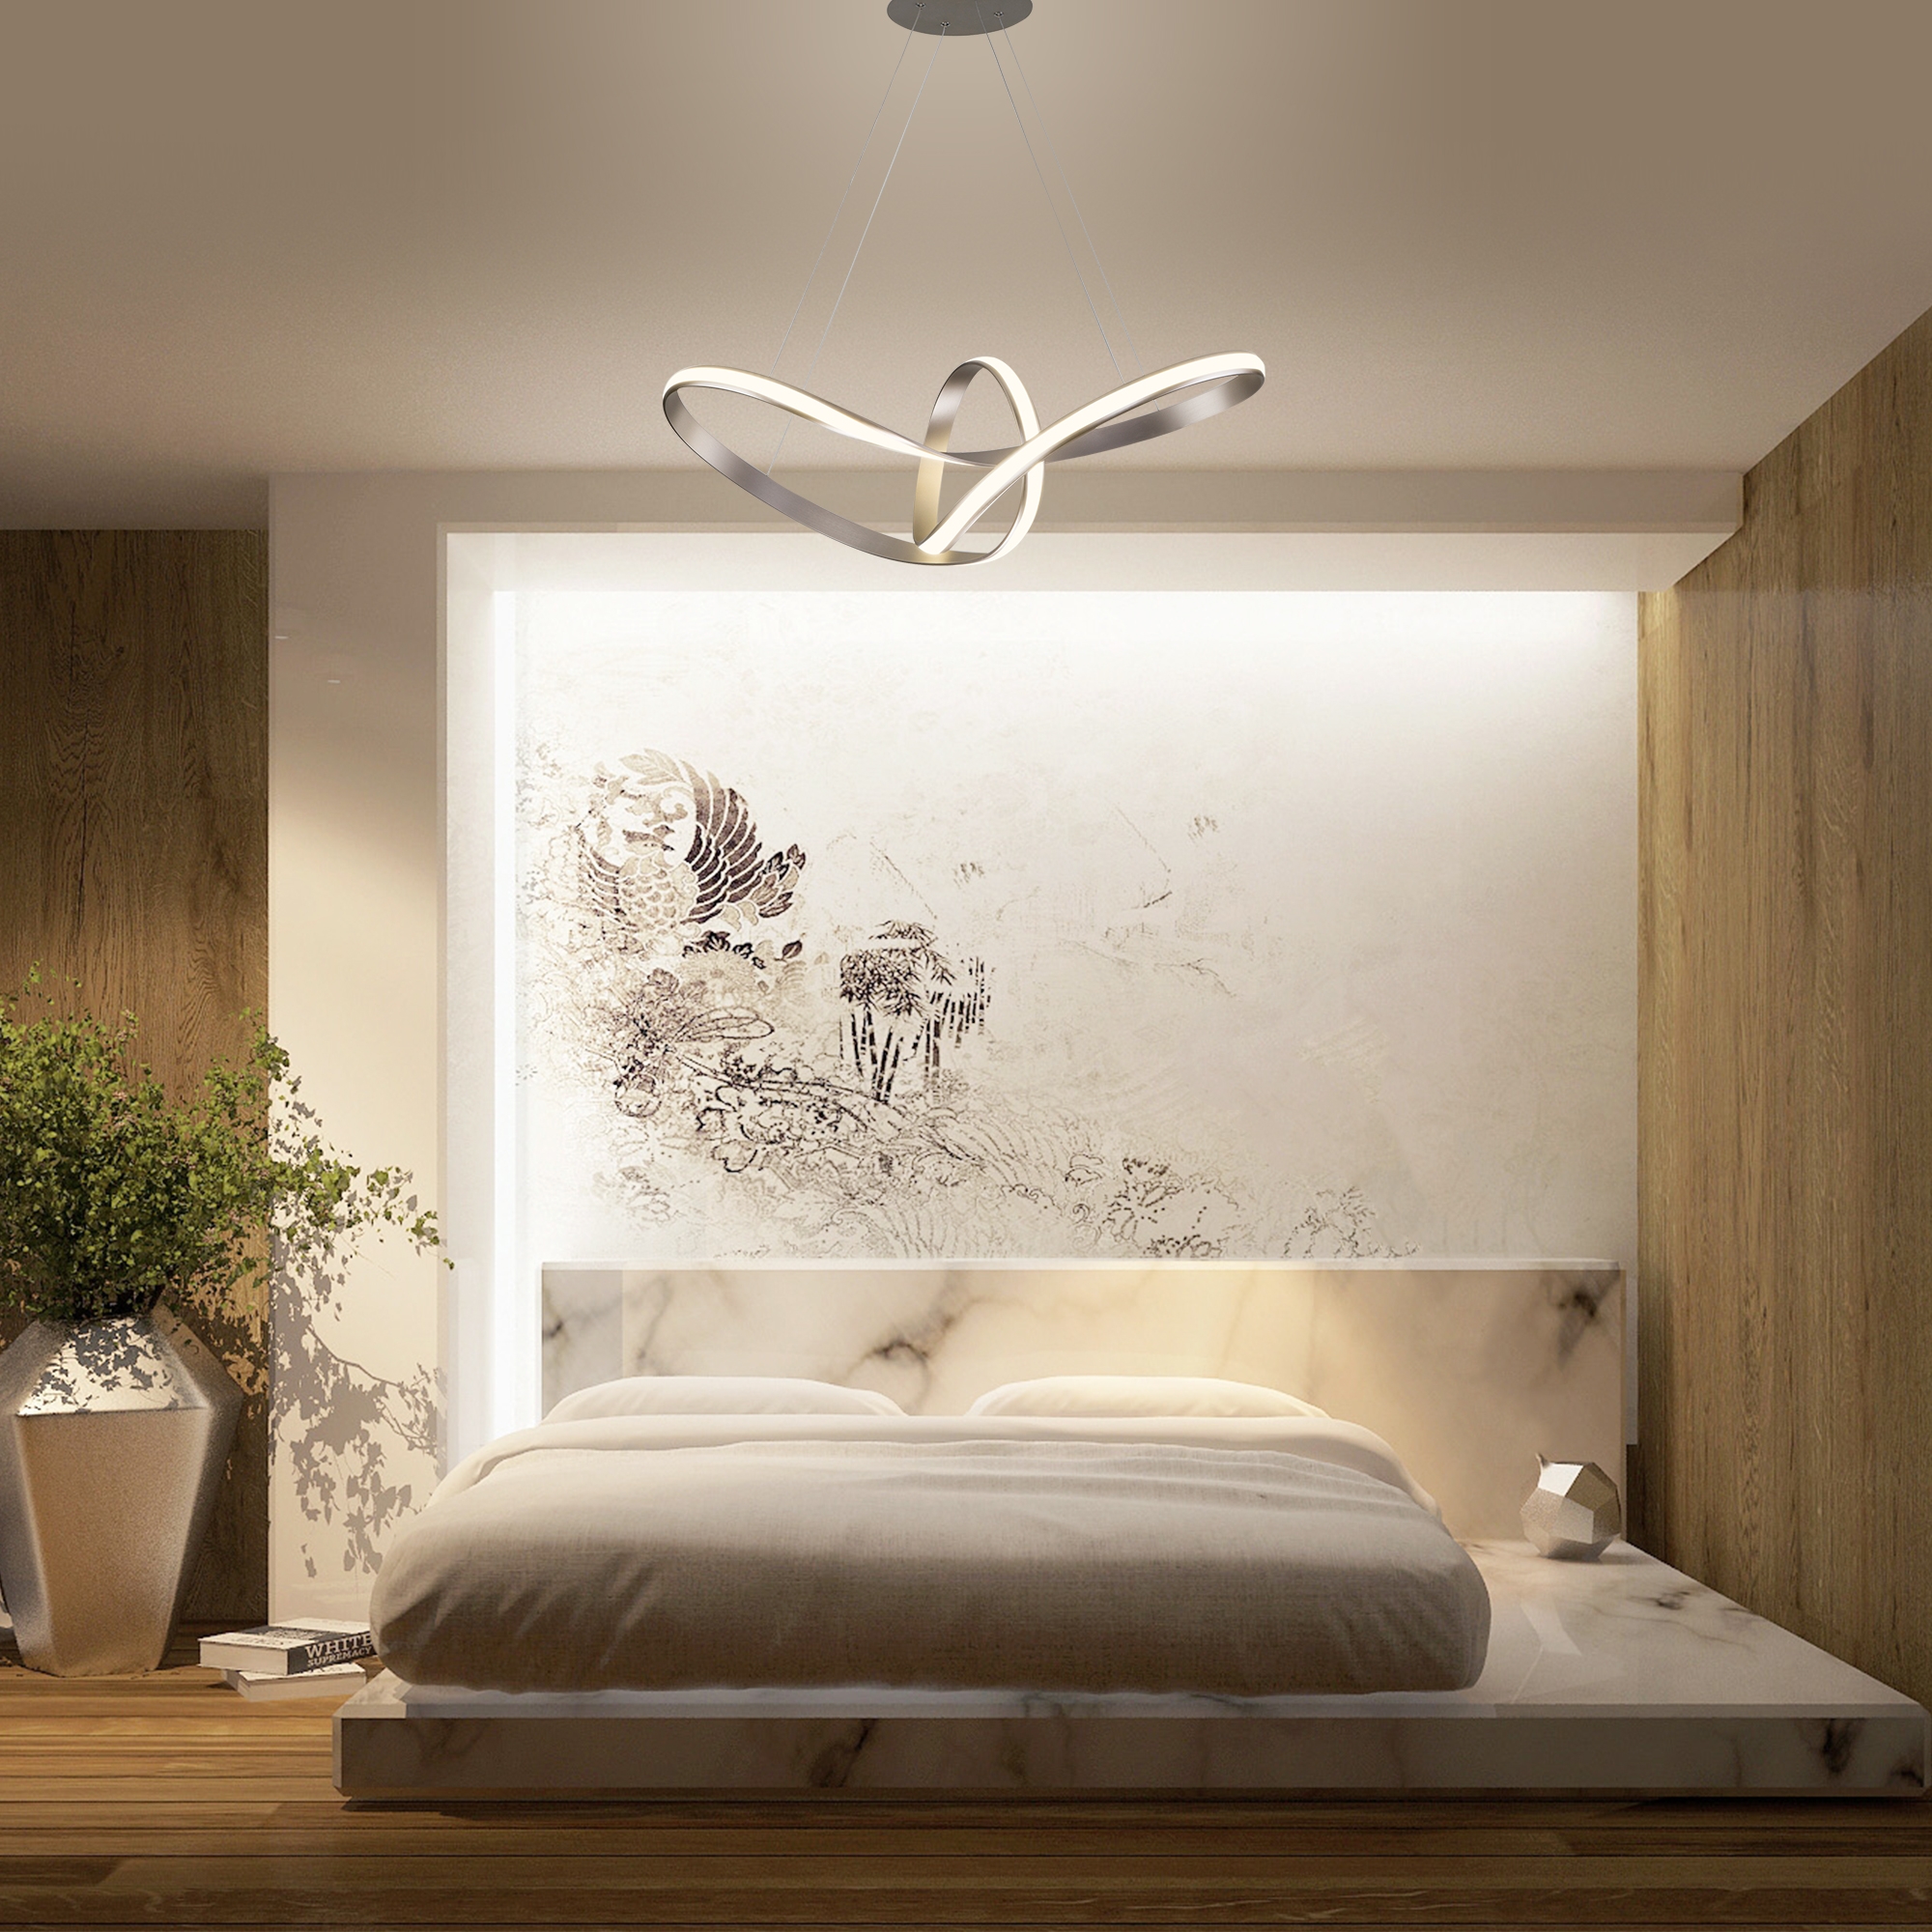 Светильники в спальне в стиле минимализм